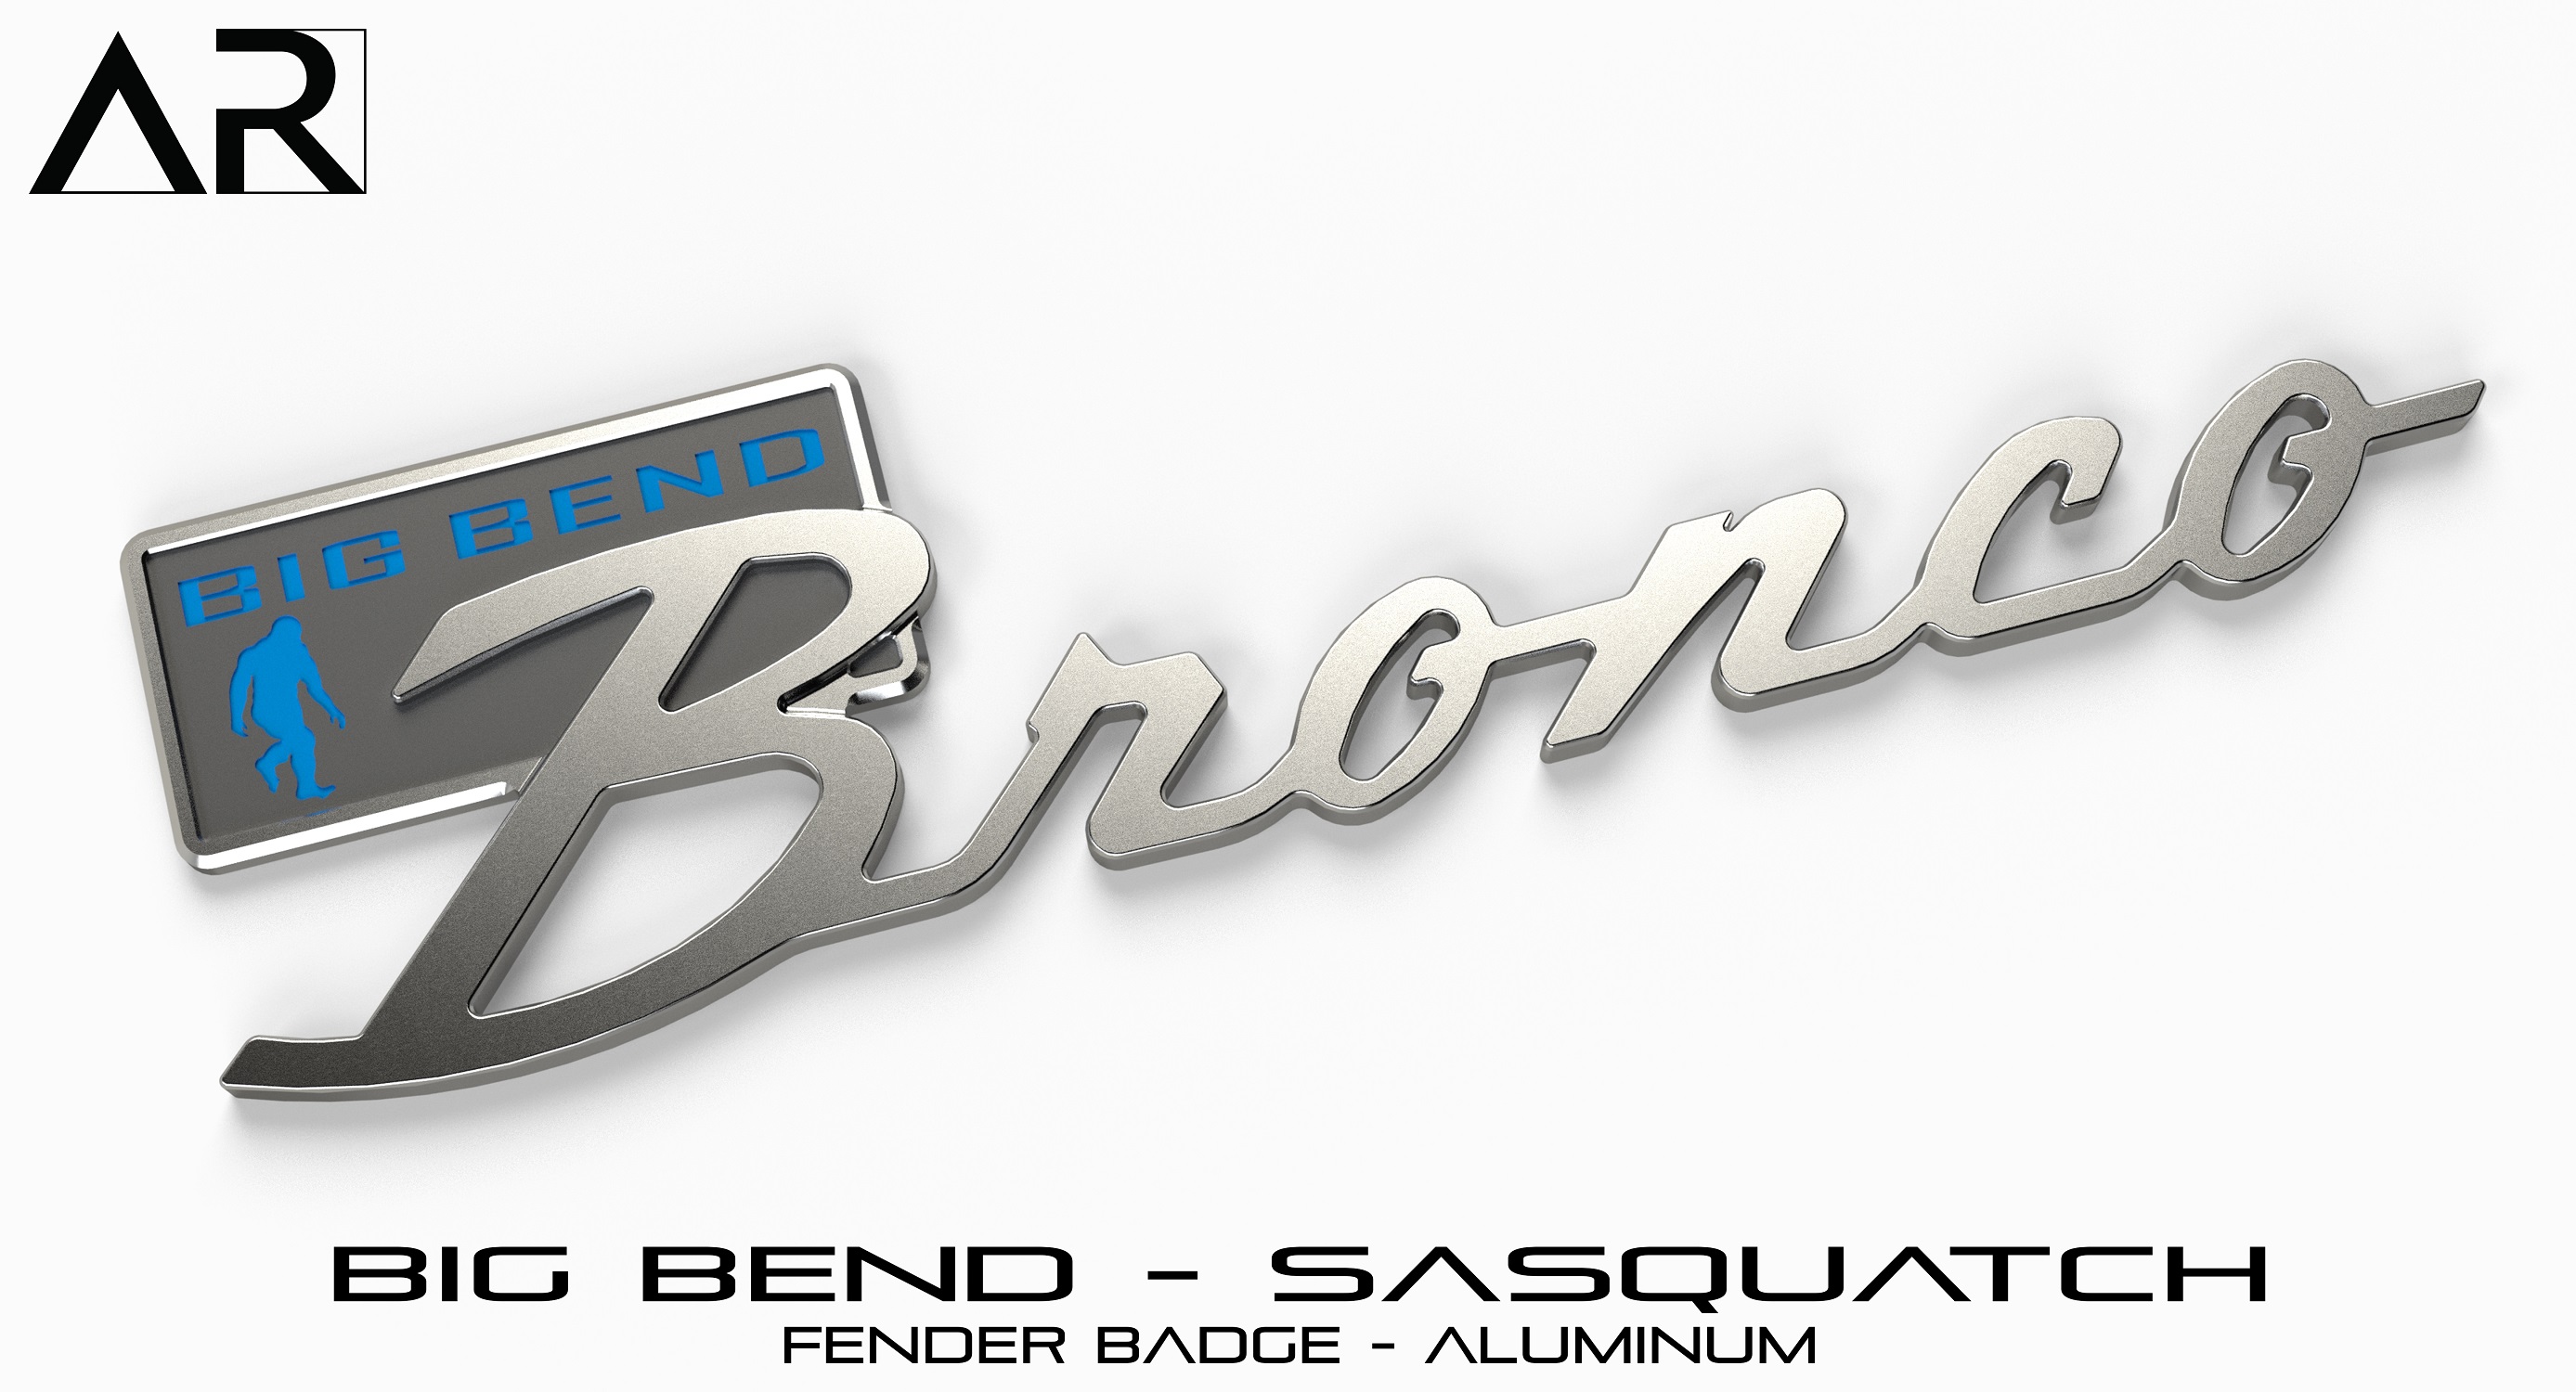 1601007_S  - Fender Badge  - Big Bend Sasquatch - Aluminum.jpg